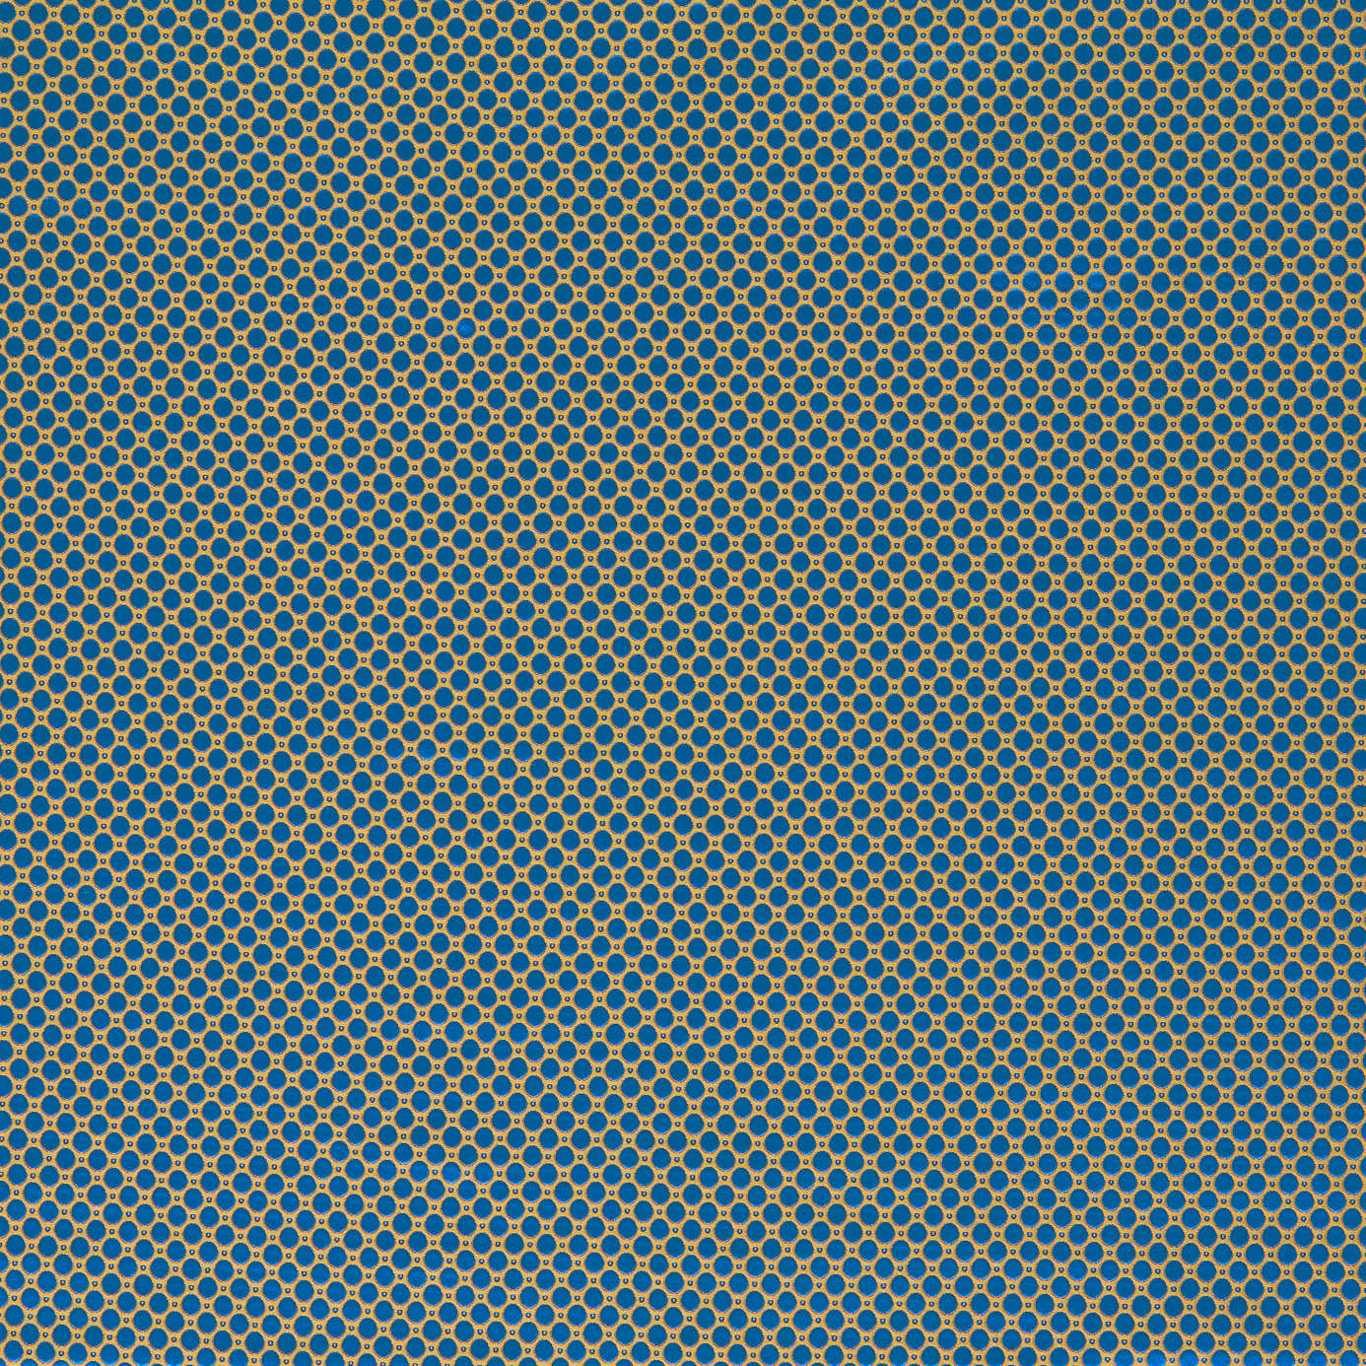 Domino Spot Lazuli Fabric by ZOF